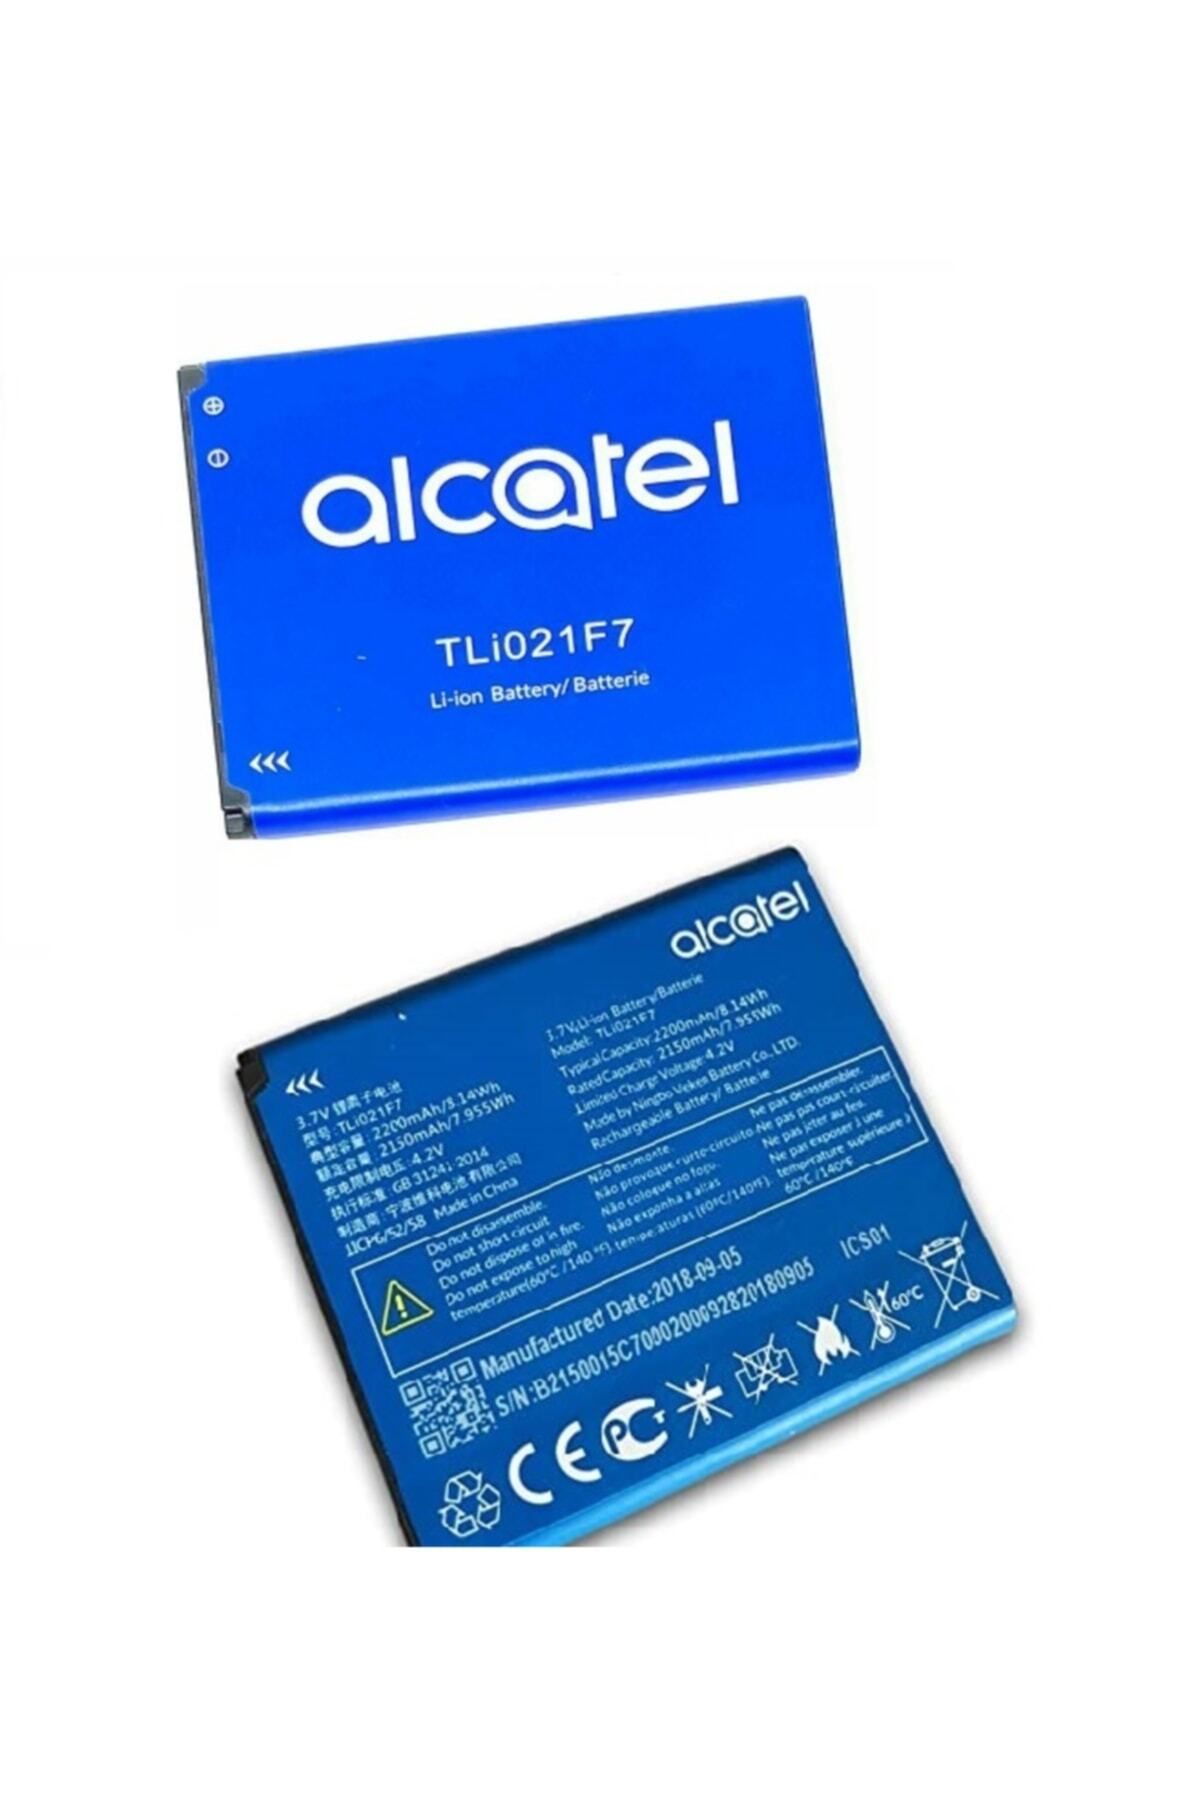 instatech Alcatel Ee70 Mini 2 4g Lte Wifi Pil Batarya Tli021f7 2200 Mah